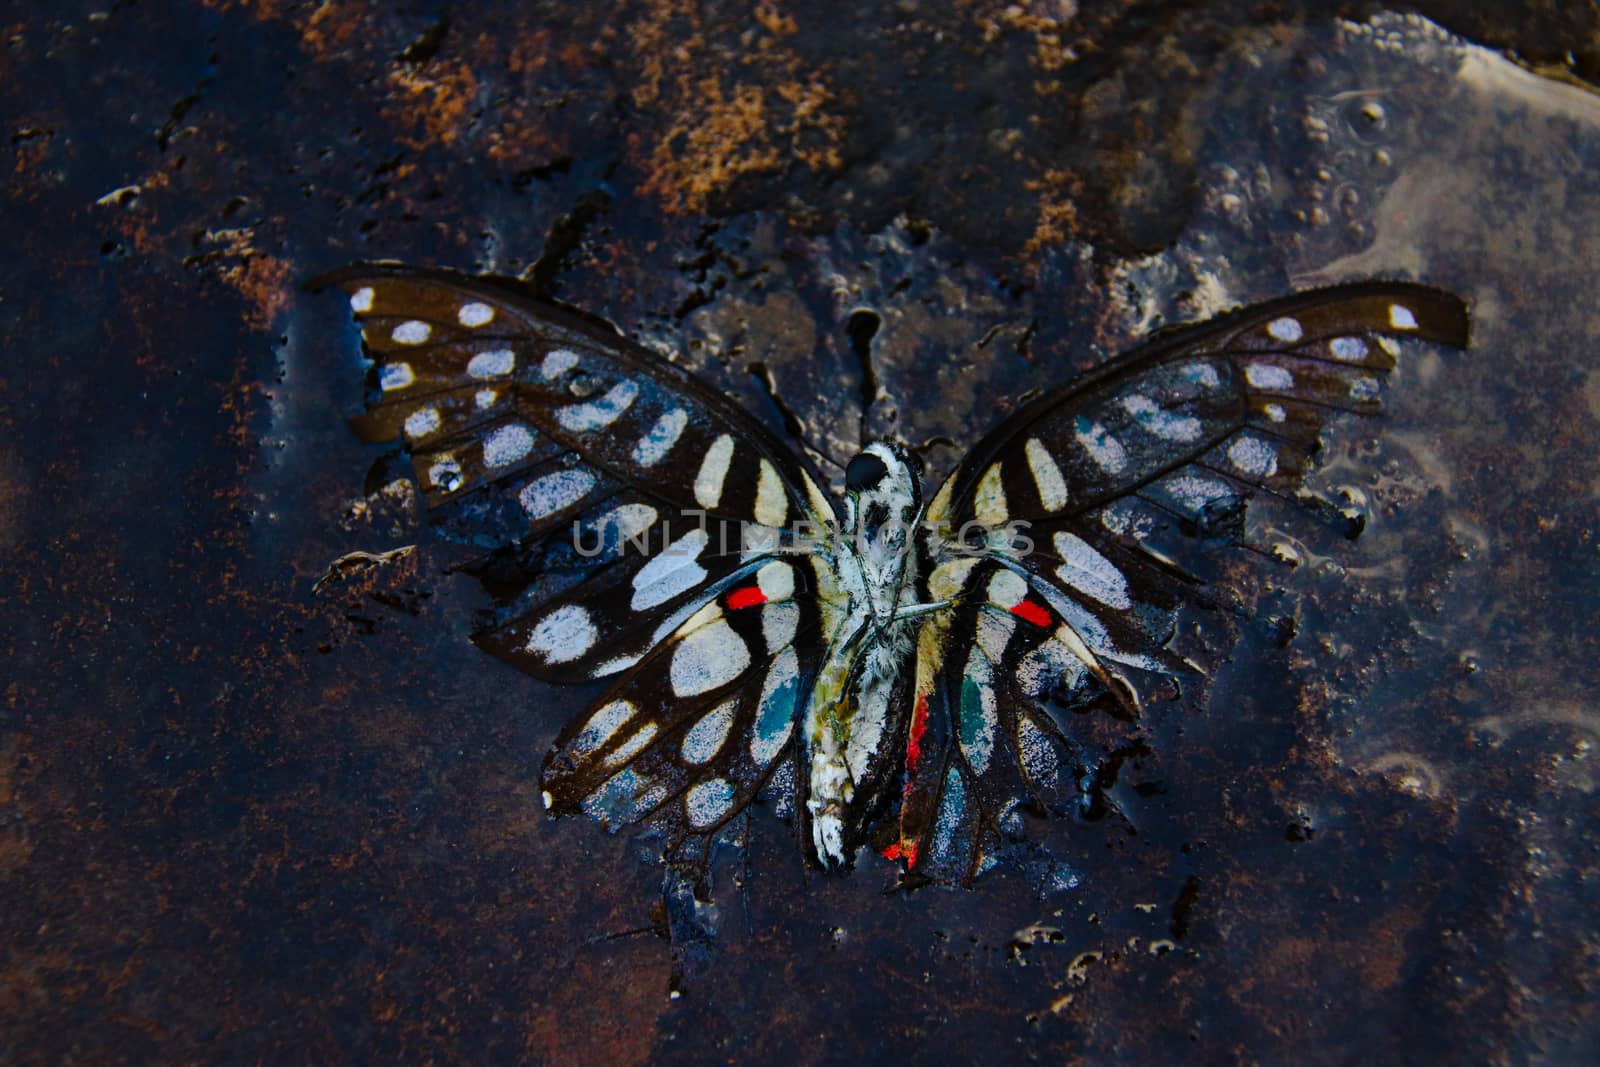 Dead Butterfly by Sonnet15